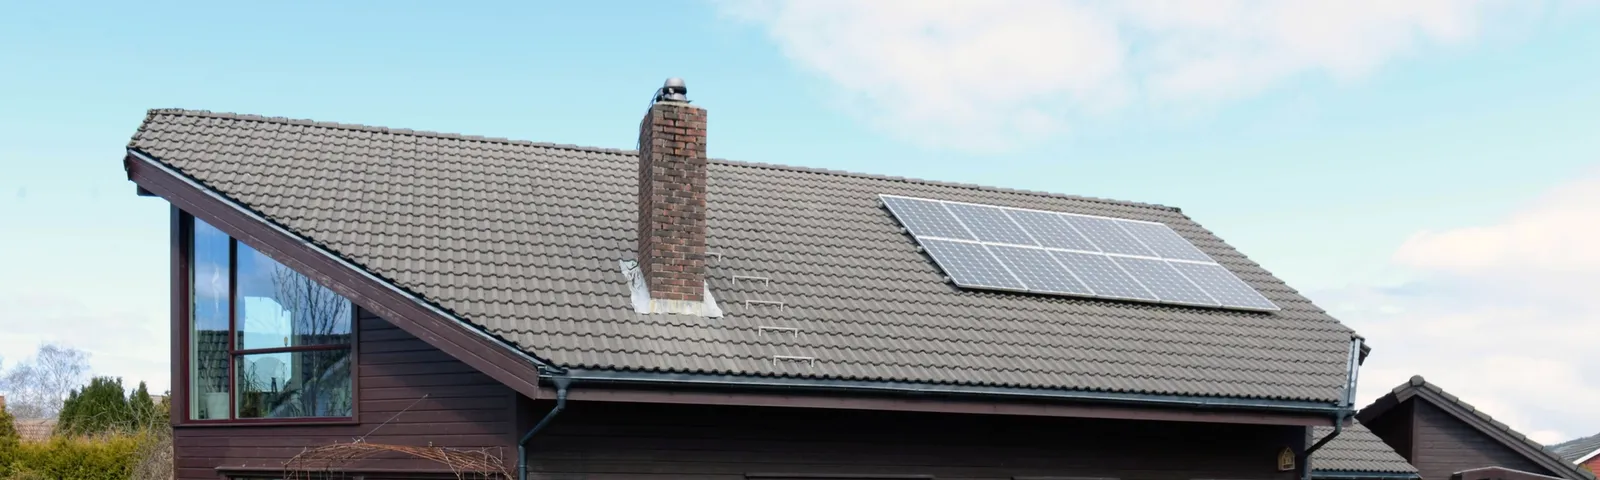 Hustak med solcellepanel